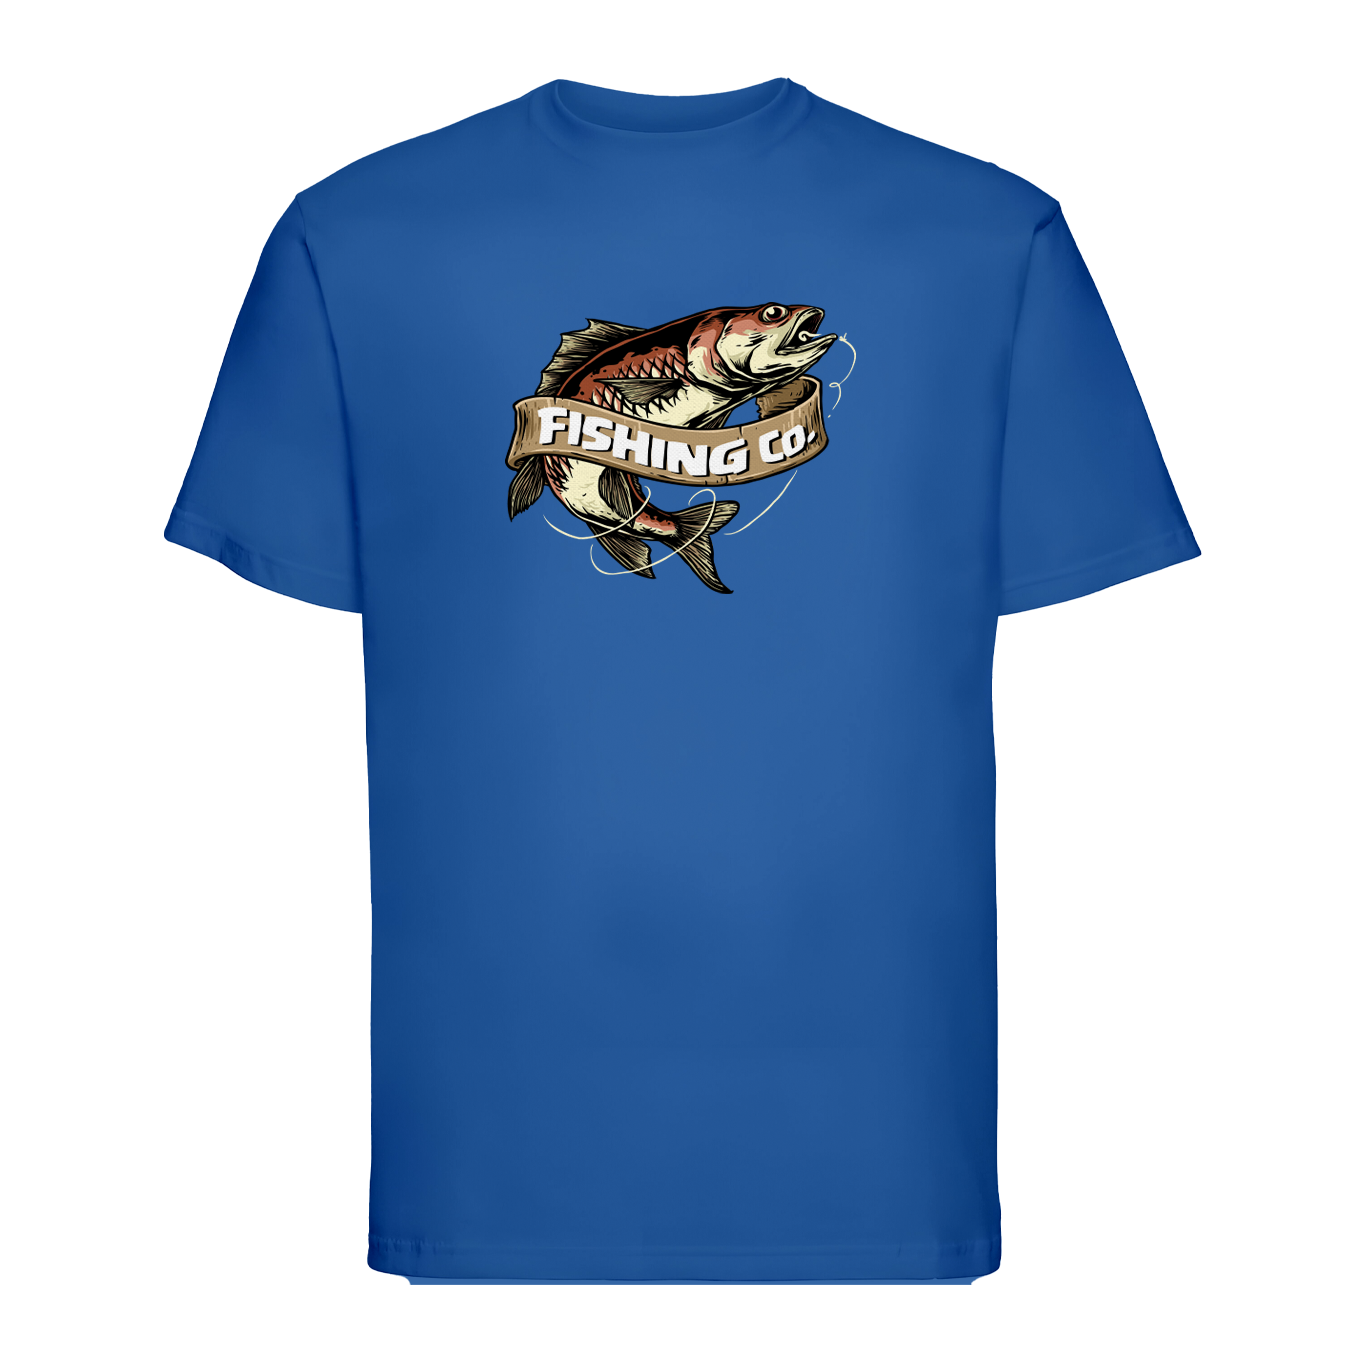 T-shirt "Fishing Co."